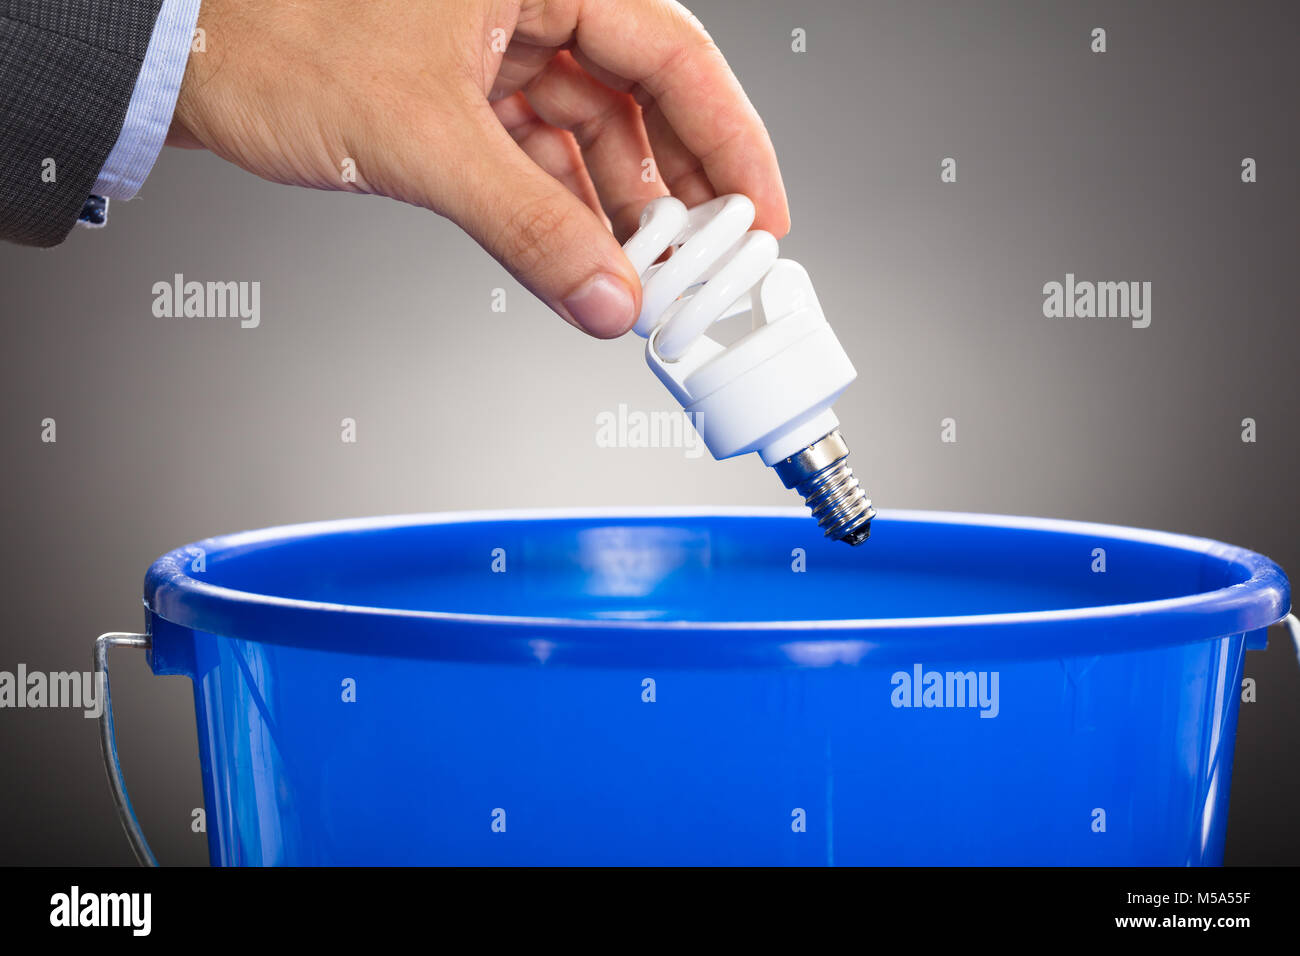 Ritagliate la mano dell'uomo d'affari gettando efficiente dal punto di vista energetico lampadina in blu la benna contro uno sfondo grigio Foto Stock